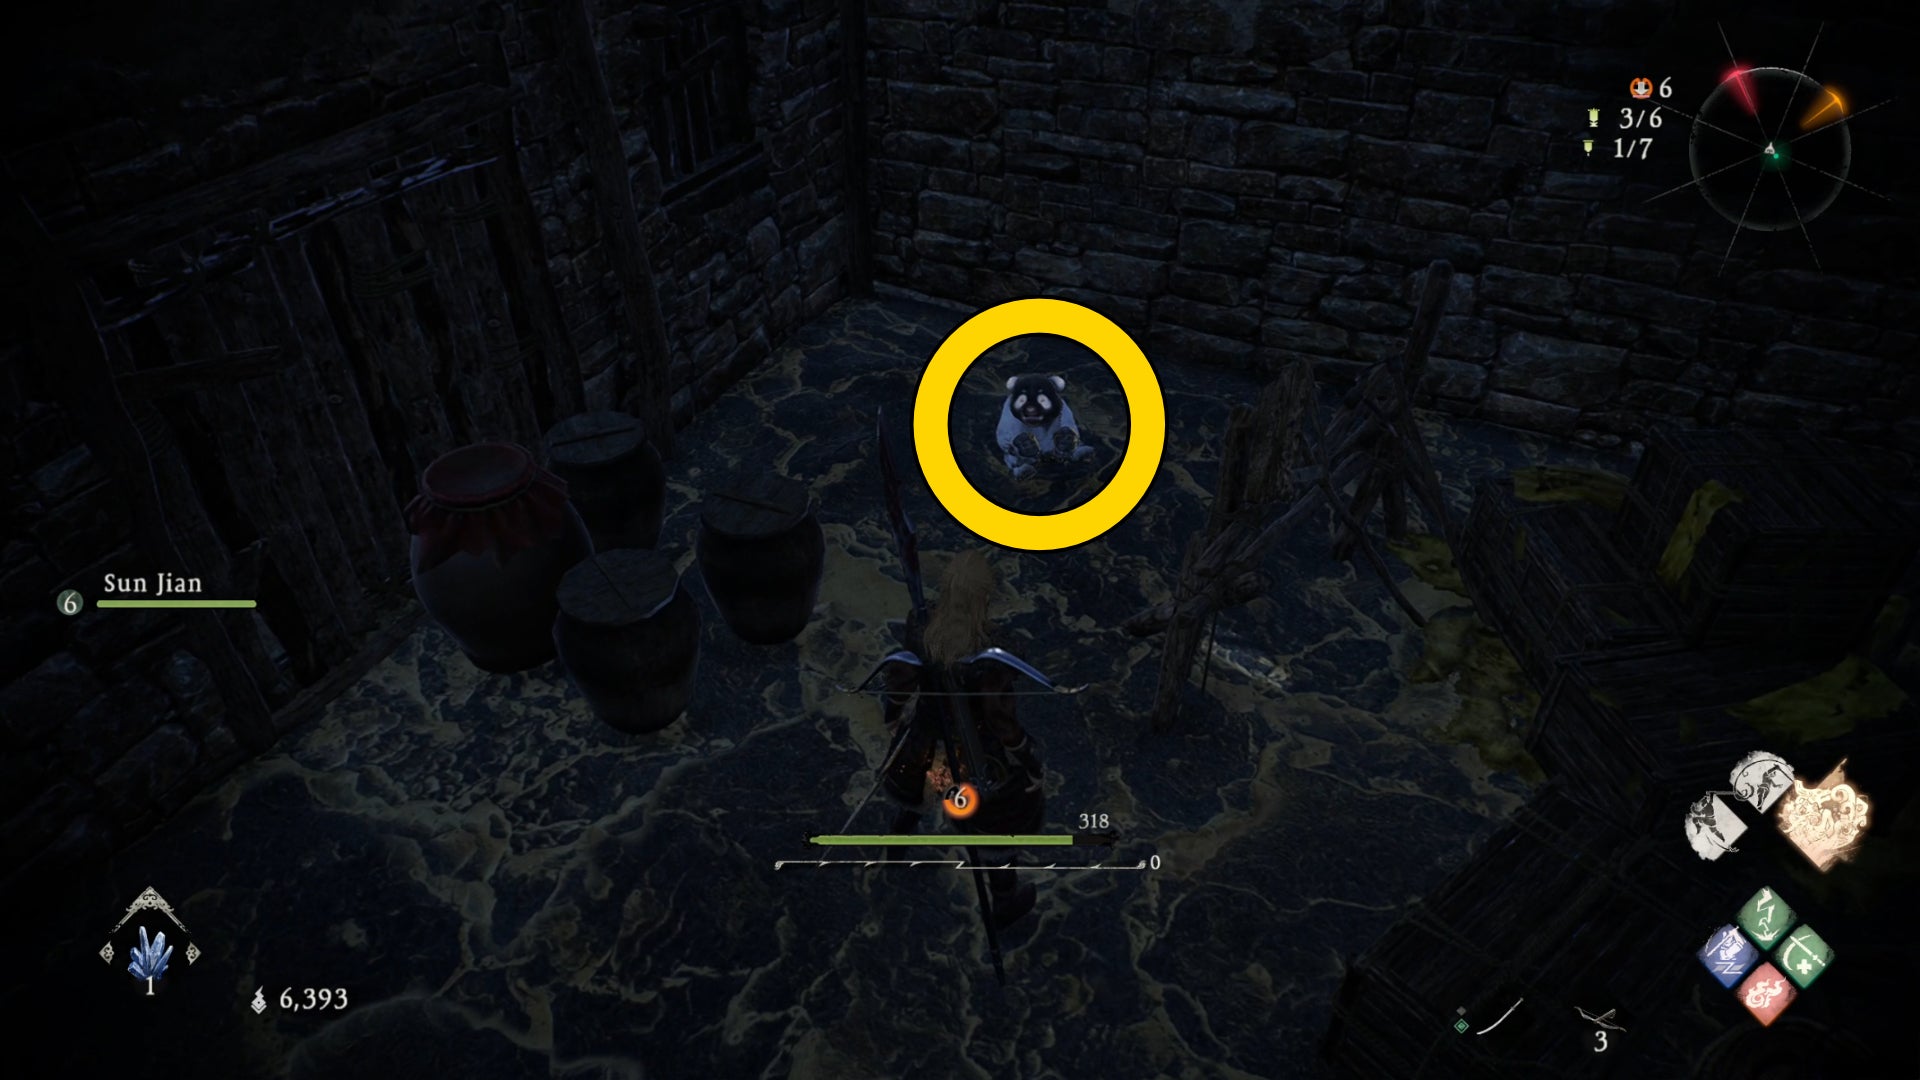 El jugador de Wo Long encuentra un Shitieshou en una habitación oscura llena de cajas.